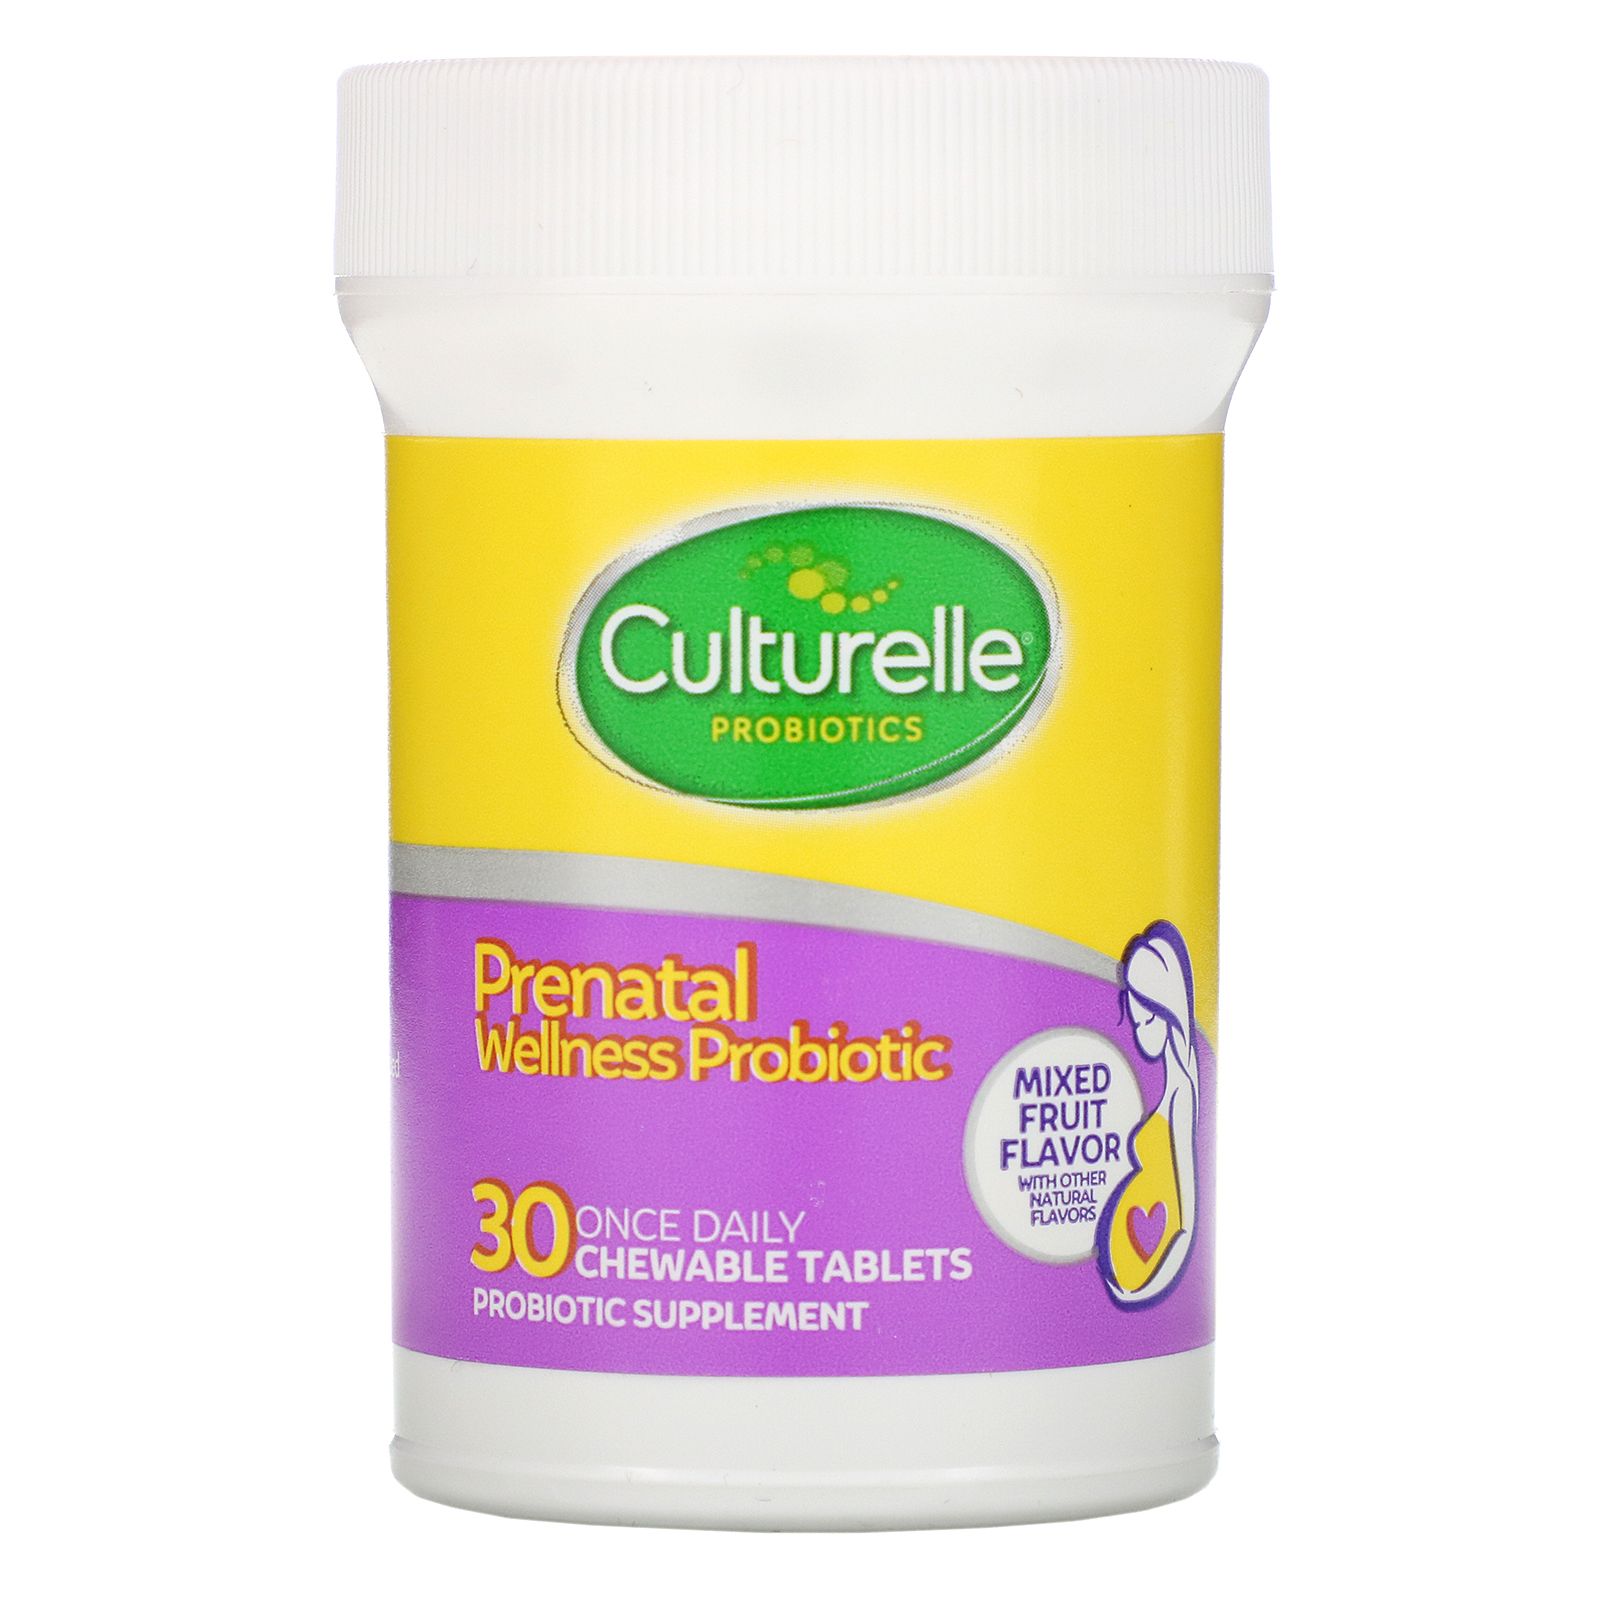 Culturelle пробиотик Baby. Пробиотик пренатал. Culturelle пробиотик для детей новорожденных. Once 30